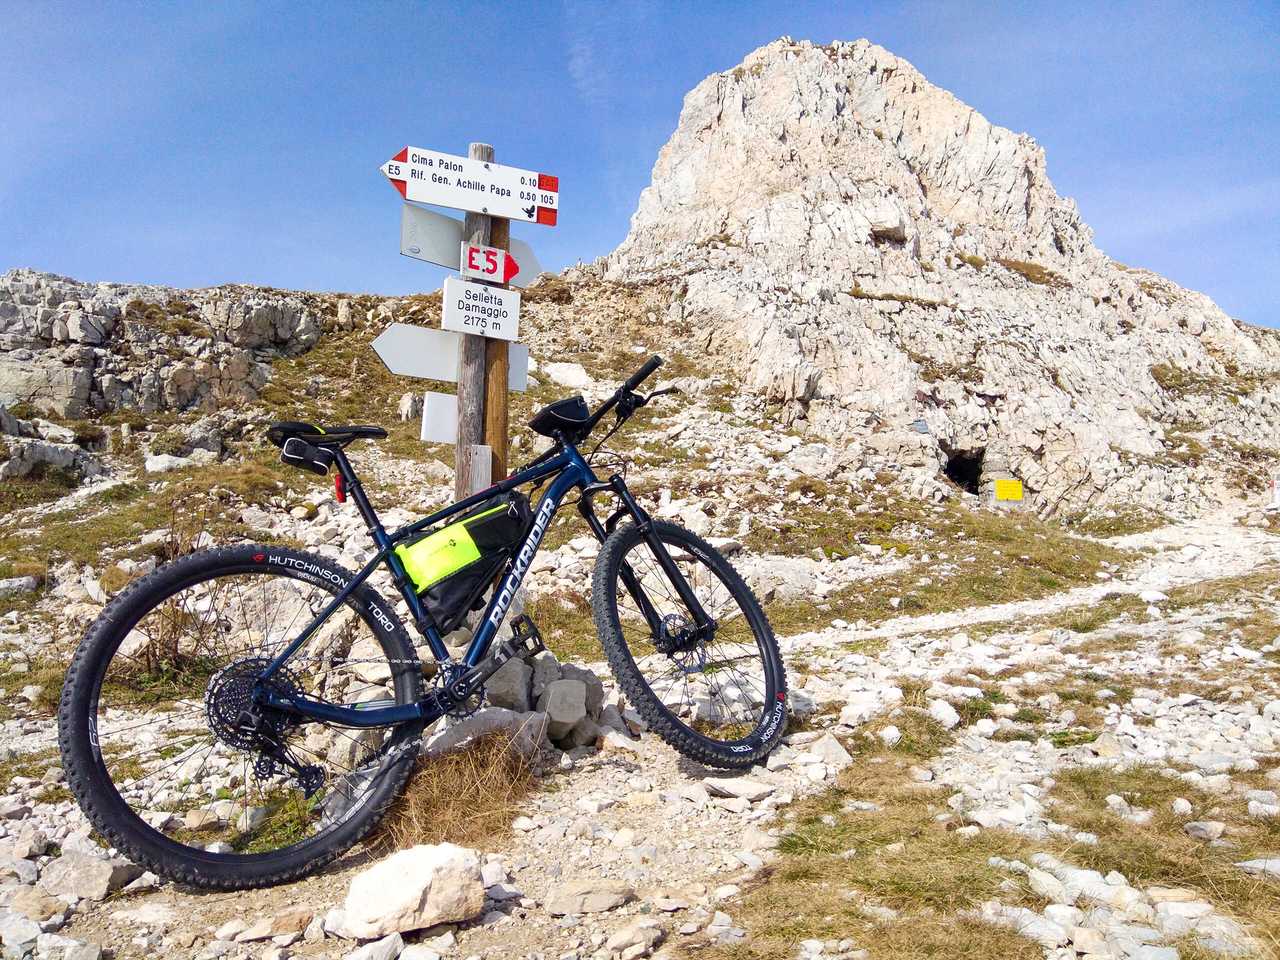 La mia mountain bike sotto il Dente Italiano. Pasubio. Ottobre 2020.